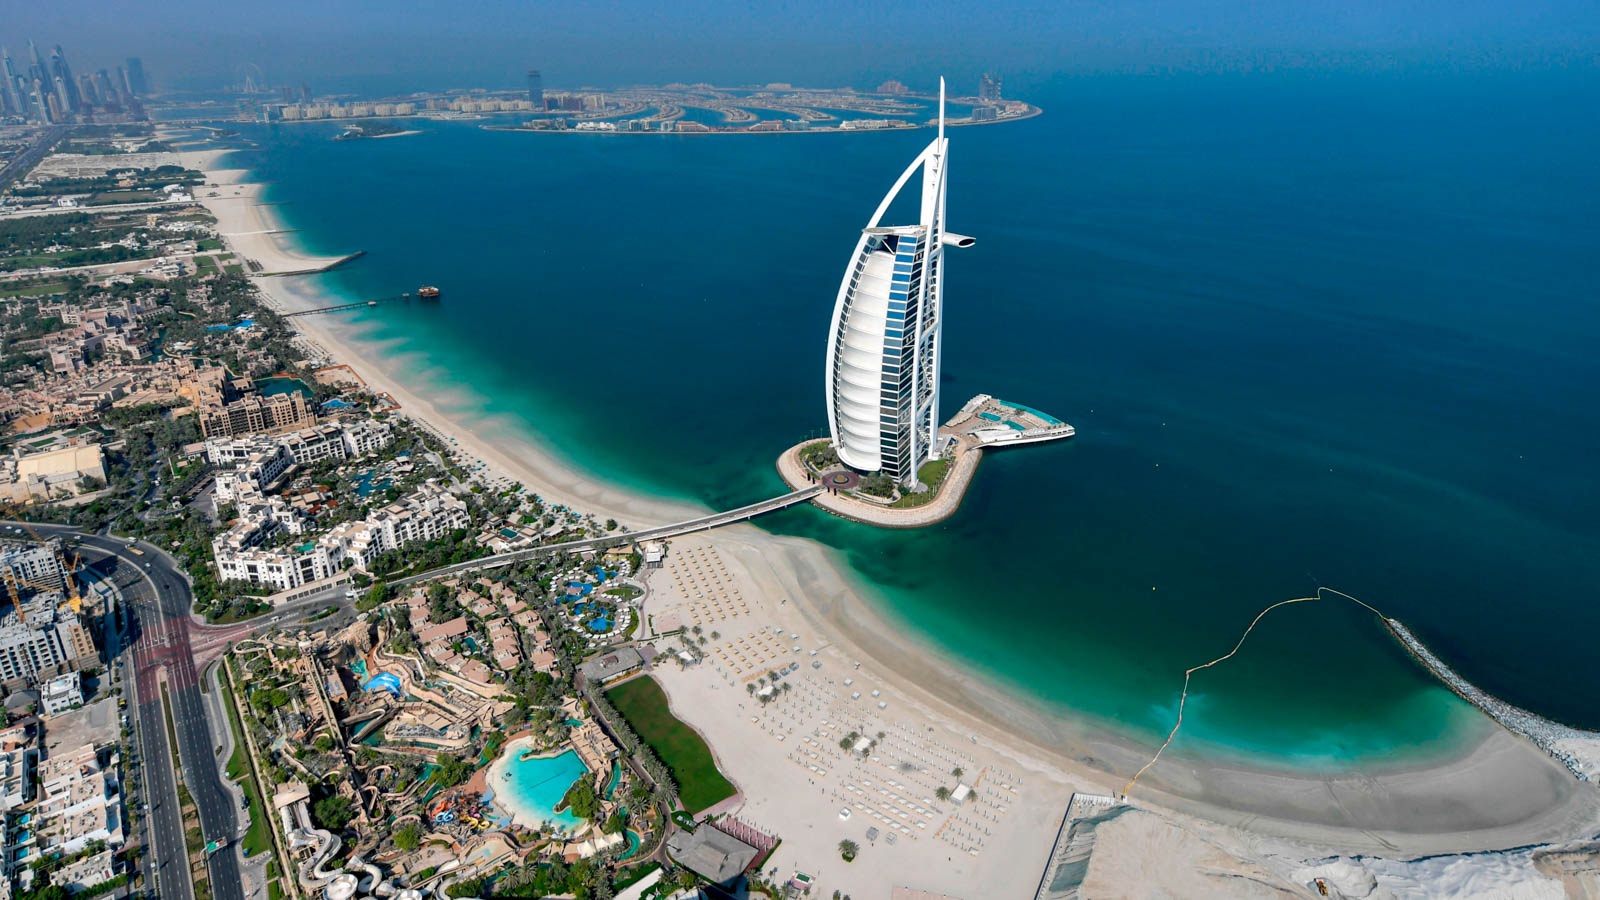 Khám phá đất nước Dubai xinh đẹp cùng du lịch Toptour